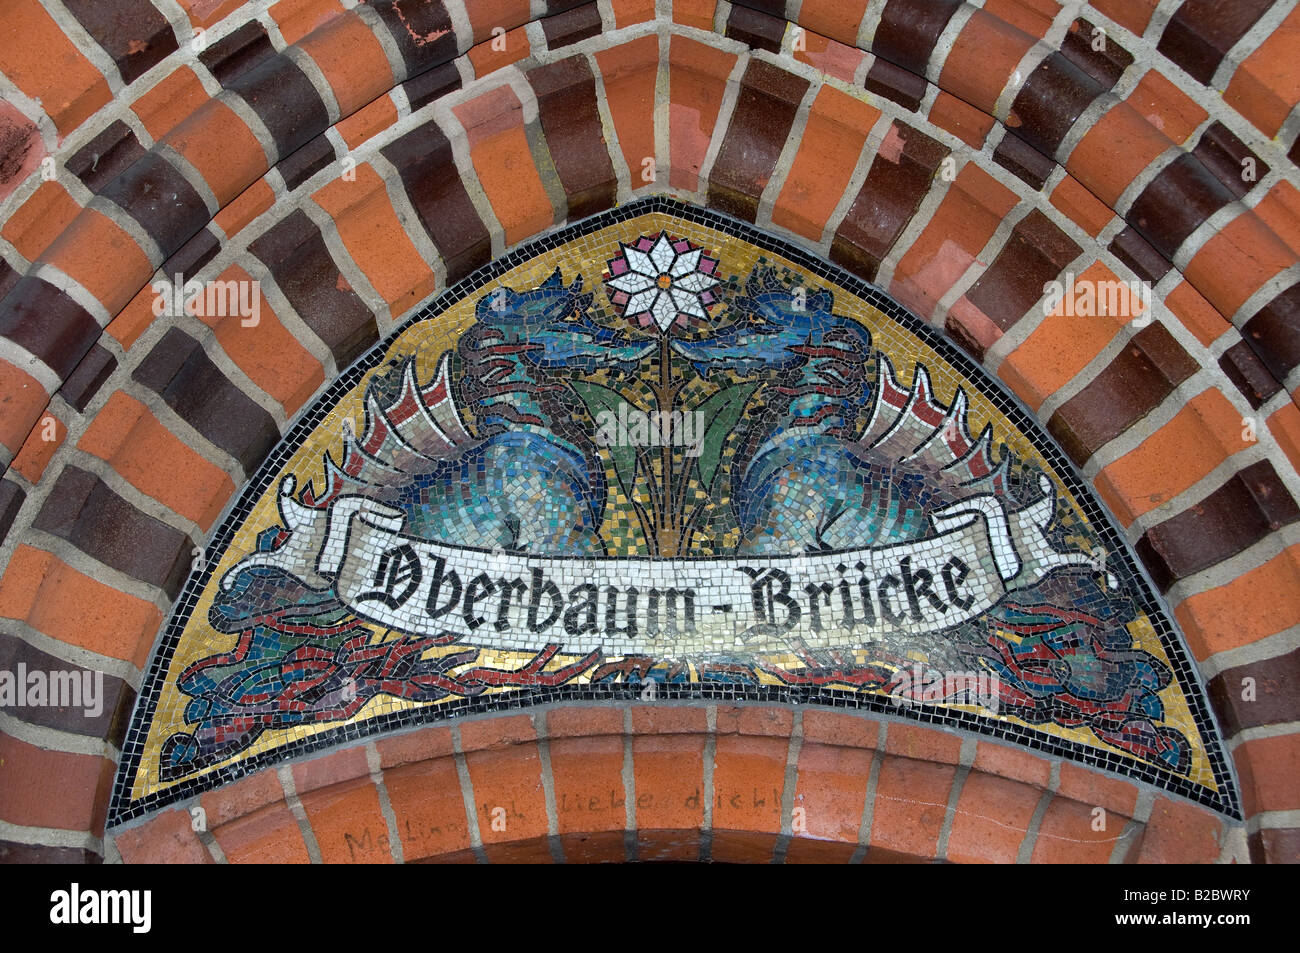 Ziermosaik an der Oberbaum Oberbaumbrücke in Berlin Deutschland Stockfoto